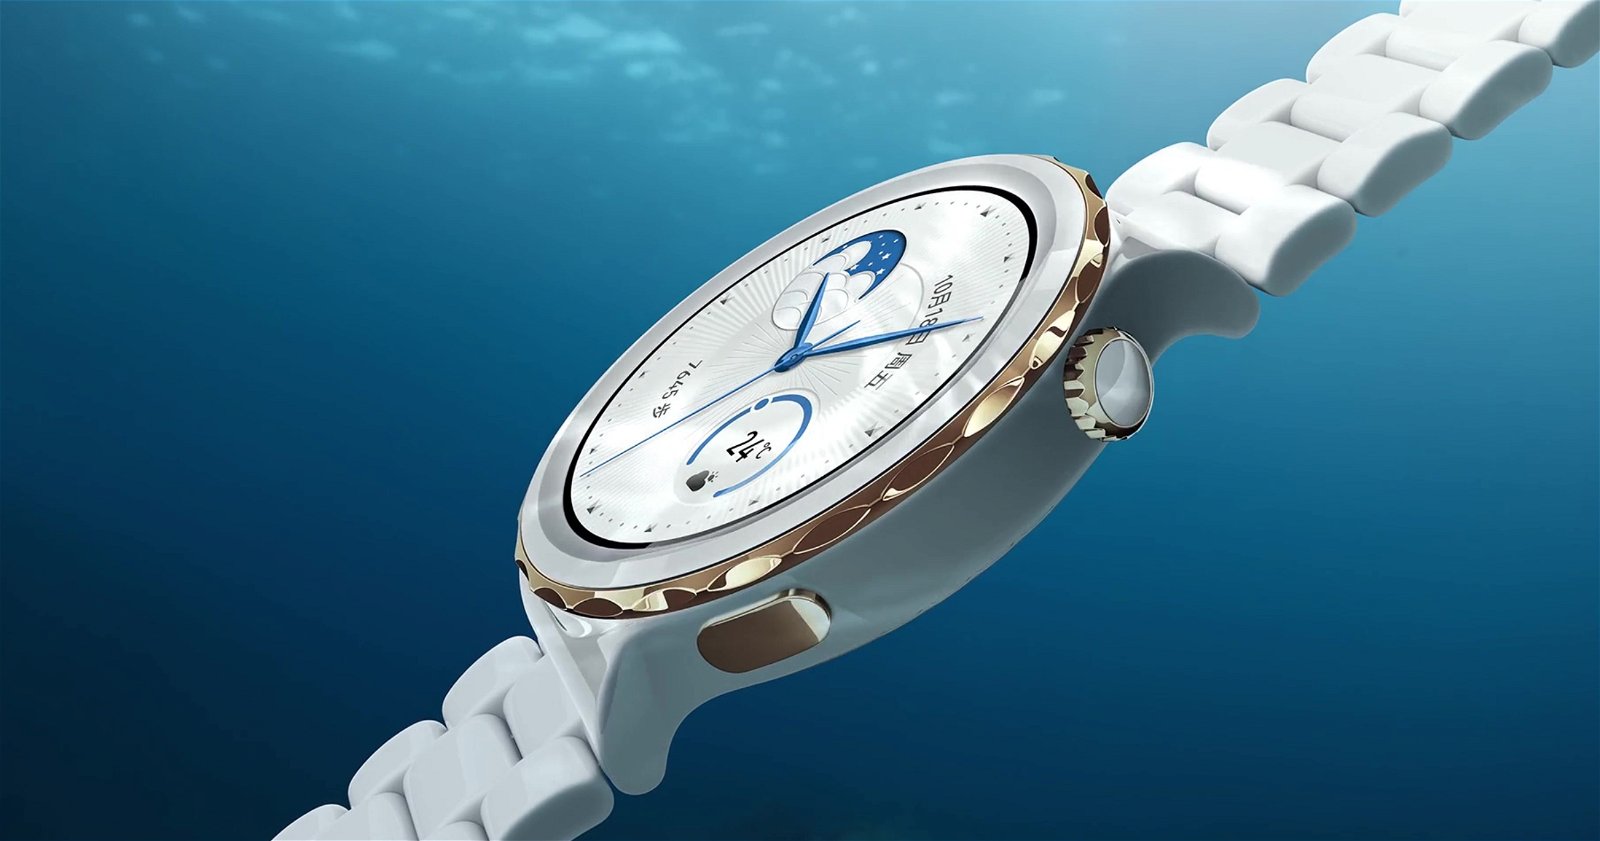 Huawei GT3 Pro trae diseños clásicos de lujo a los relojes inteligentes